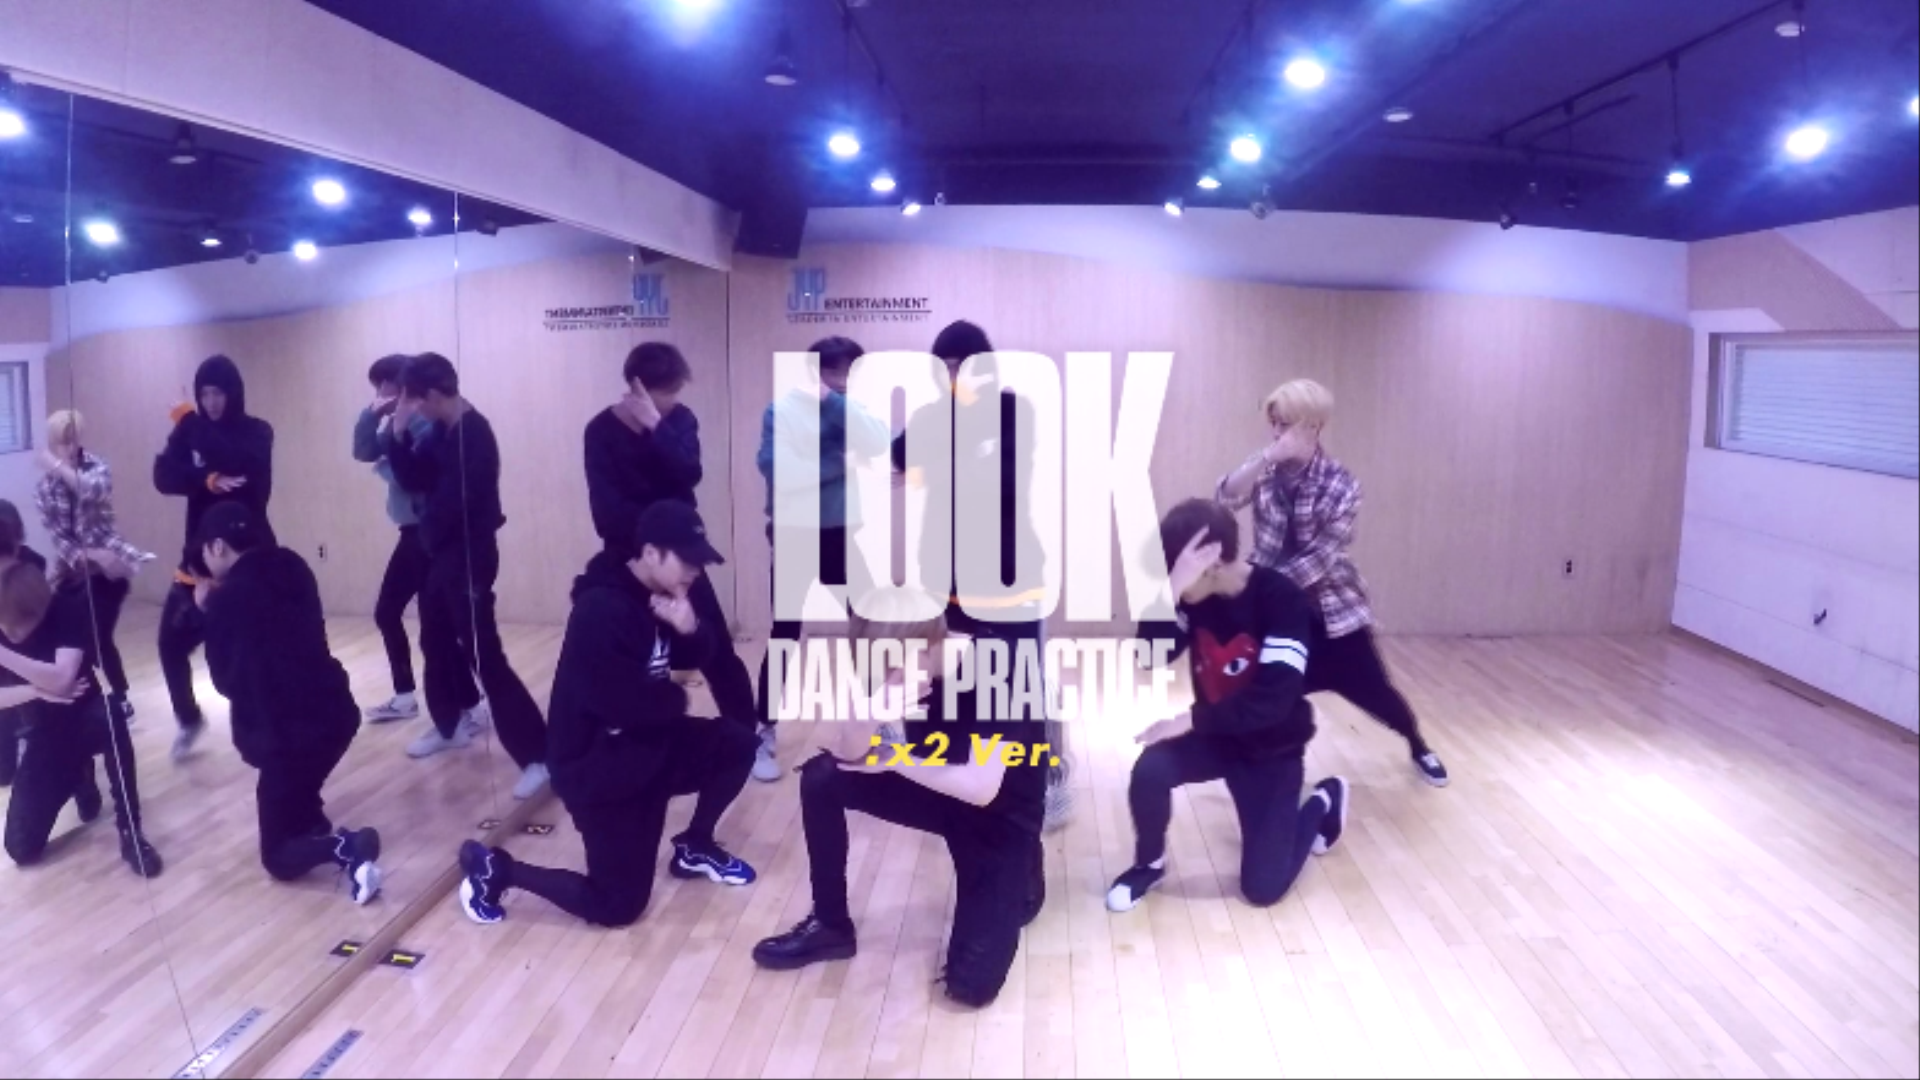 GOT7(갓세븐) "Look" Dance Practice (x2 Ver.)